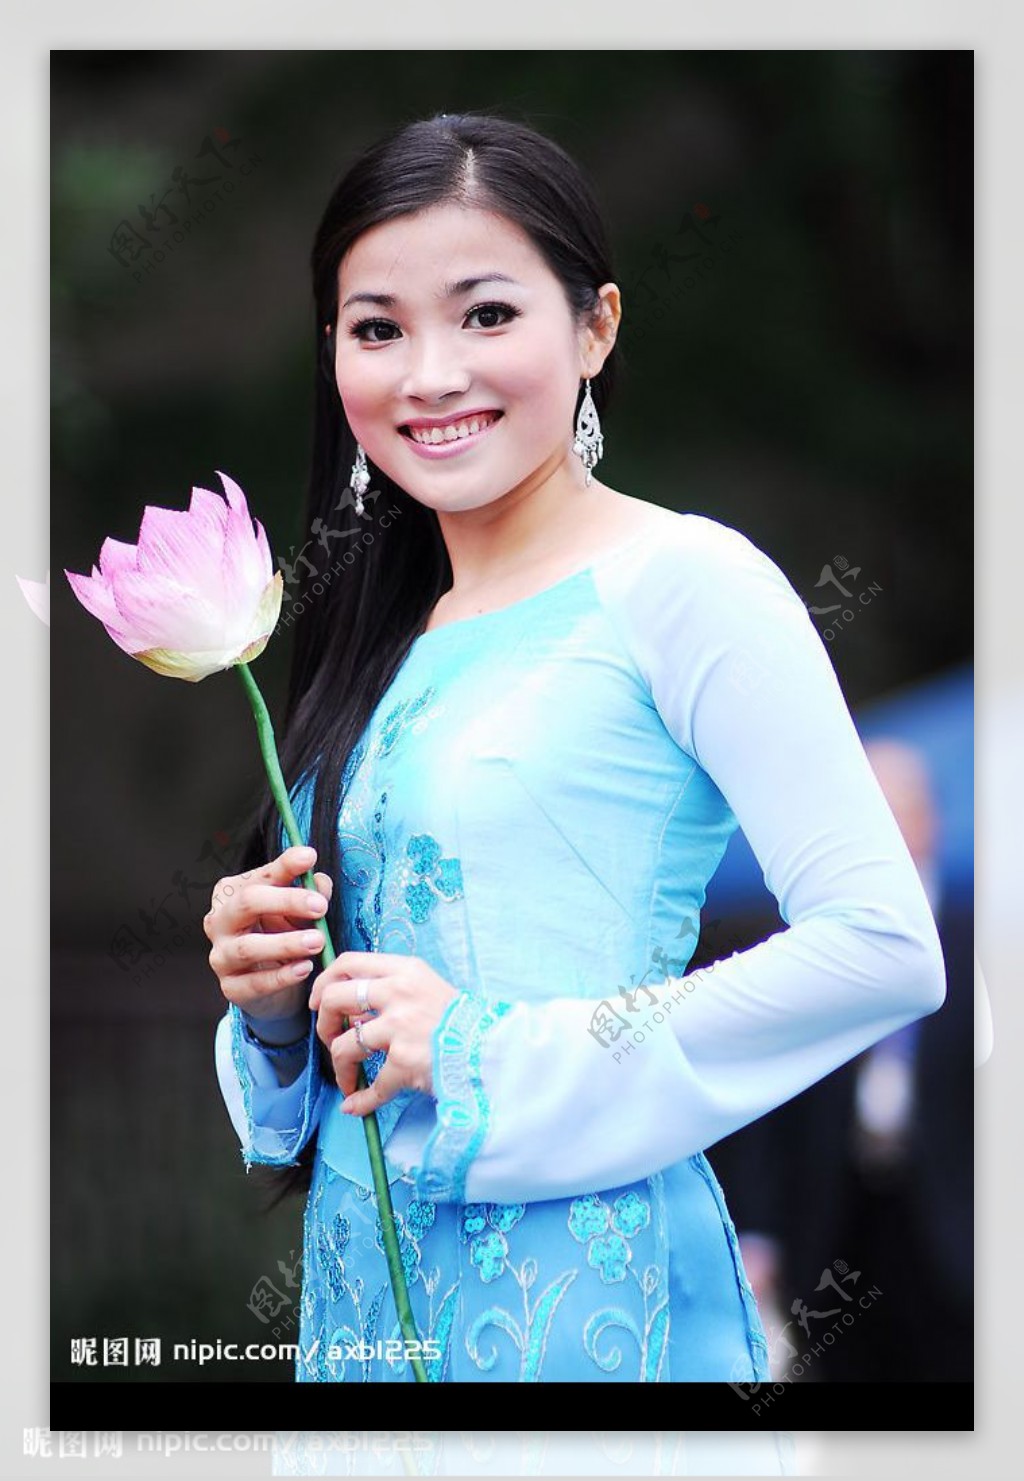 肖像 亚洲女人 越南 - Pixabay上的免费照片 - Pixabay